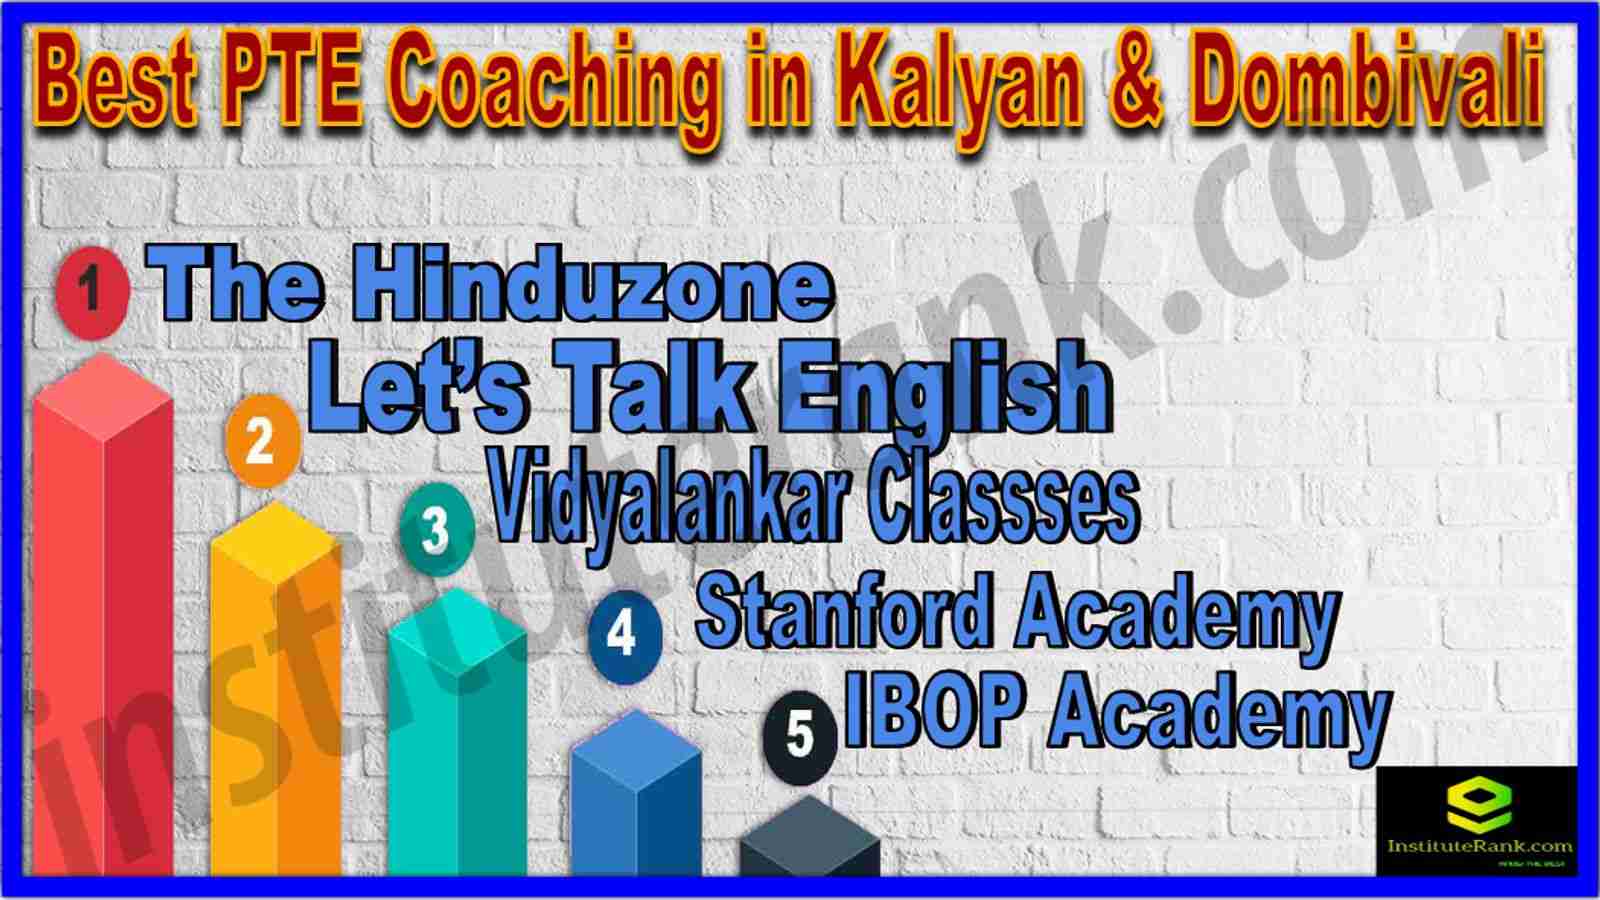 Best PTE Coaching in Kalyan & Dombivali